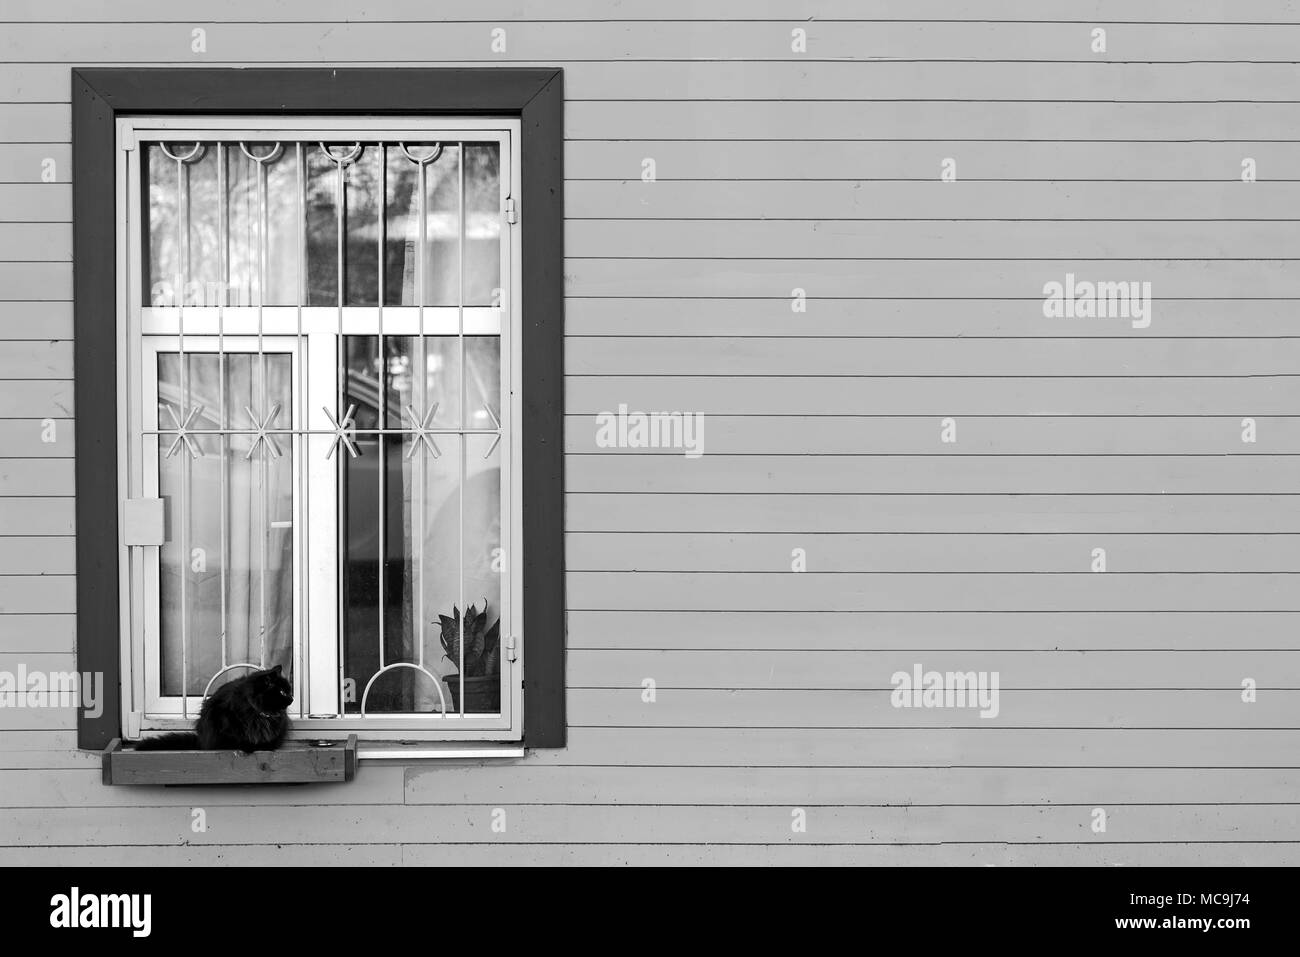 Nella casella nella finestra home il gatto è seduto. La fotografia in bianco e nero. Foto Stock